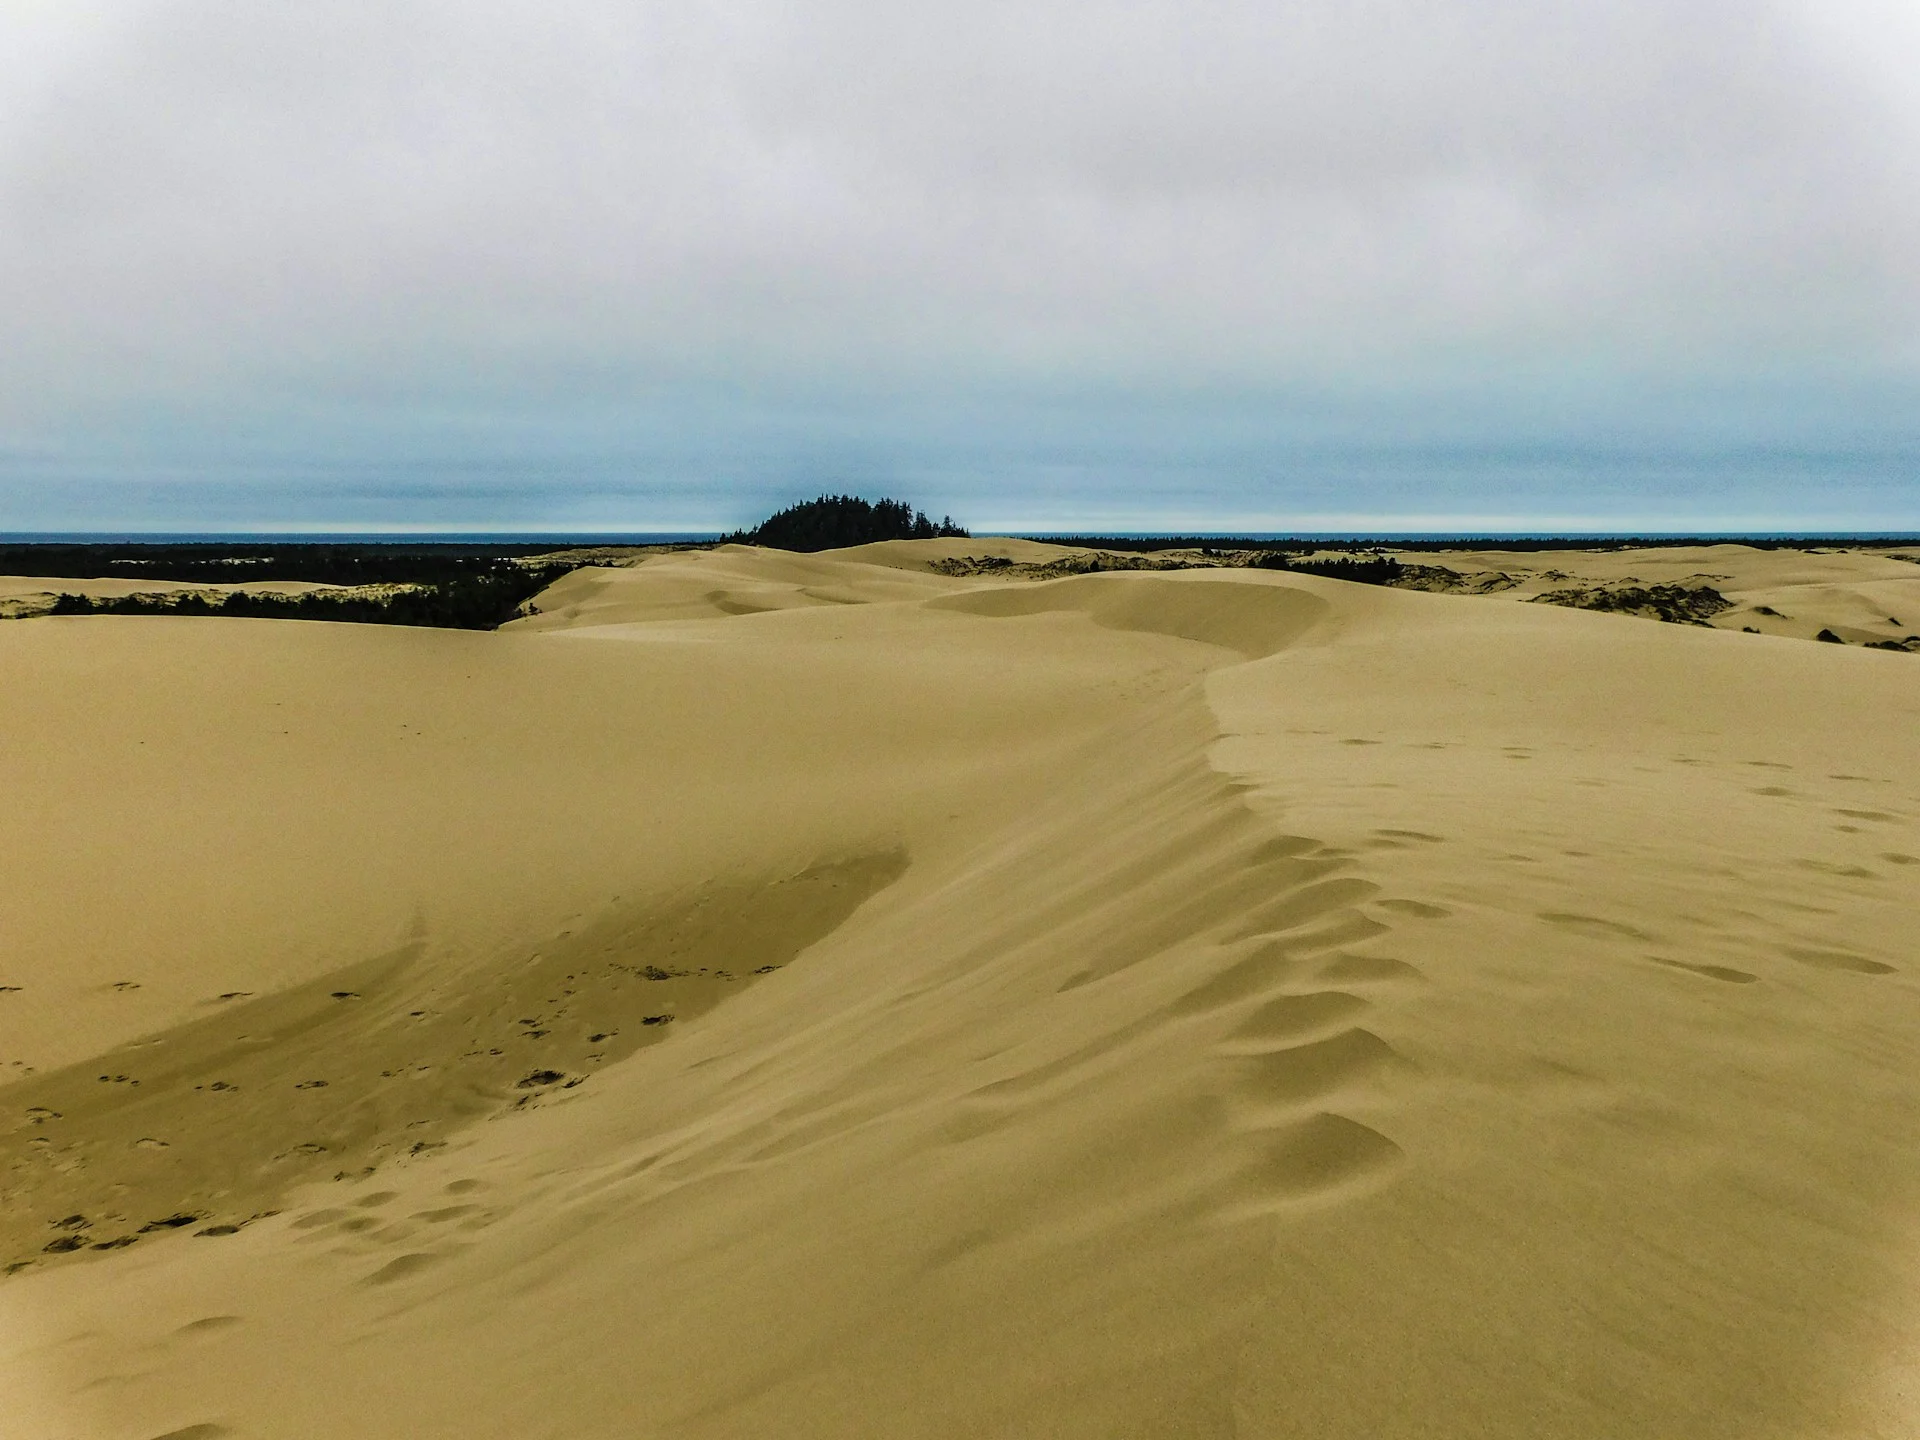 Ce projet écologique a inspiré l'histoire de « Dune »